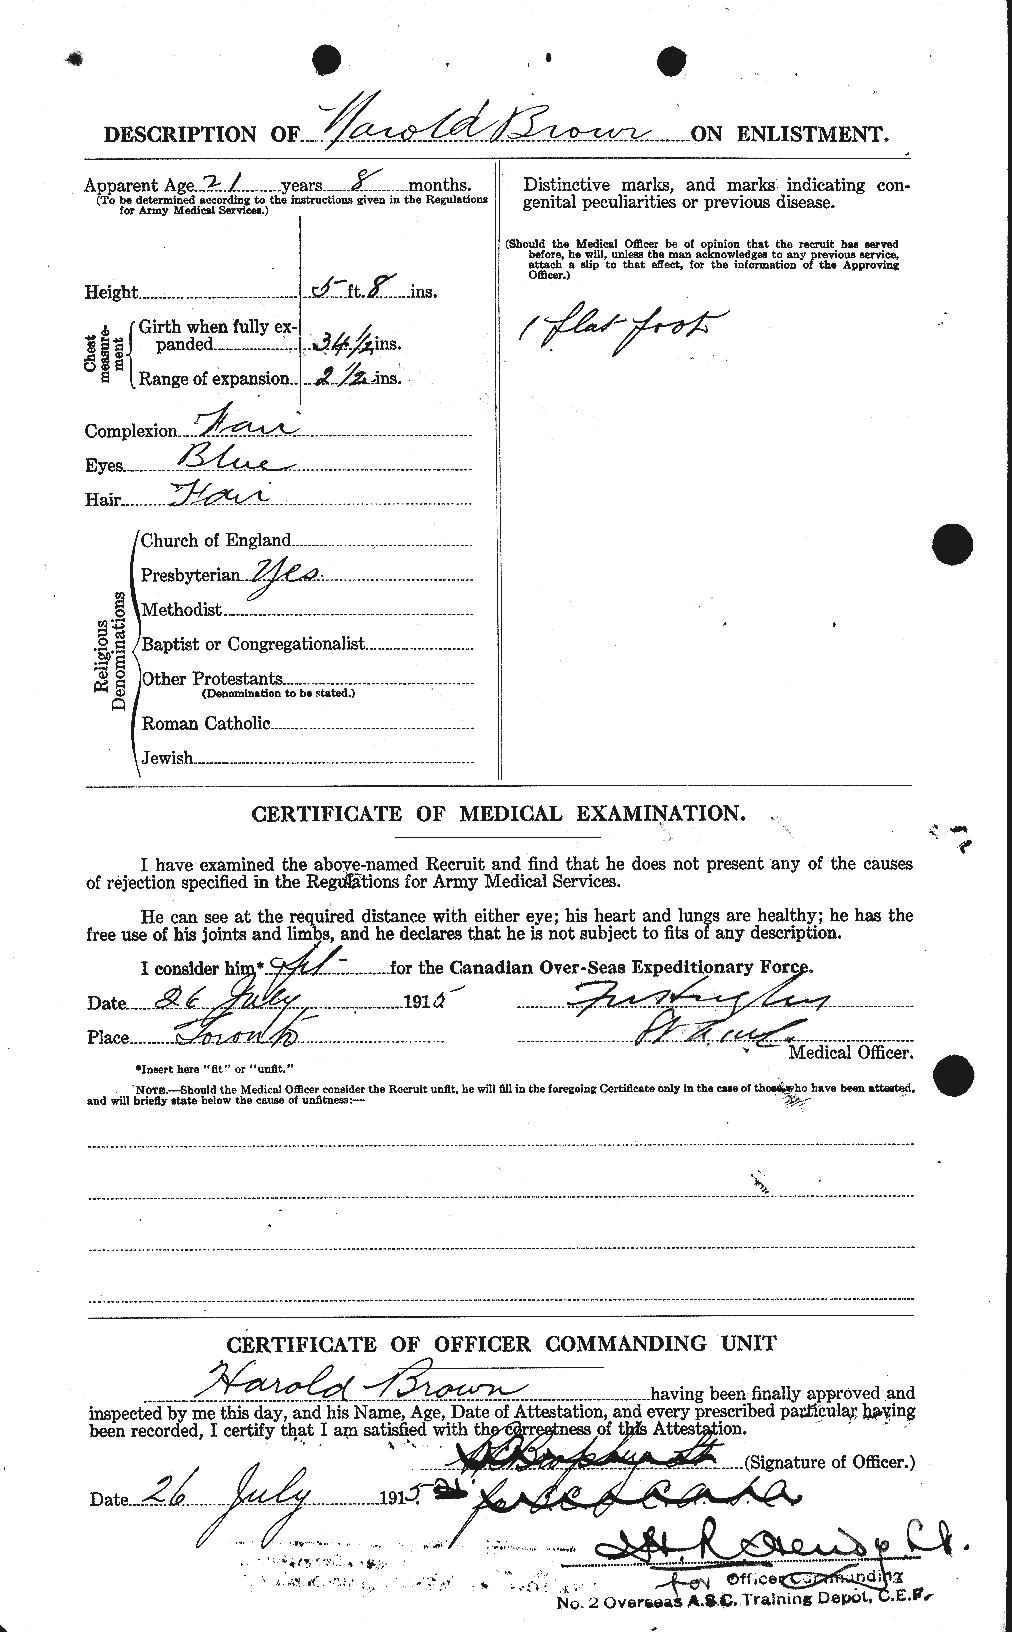 Dossiers du Personnel de la Première Guerre mondiale - CEC 265337b